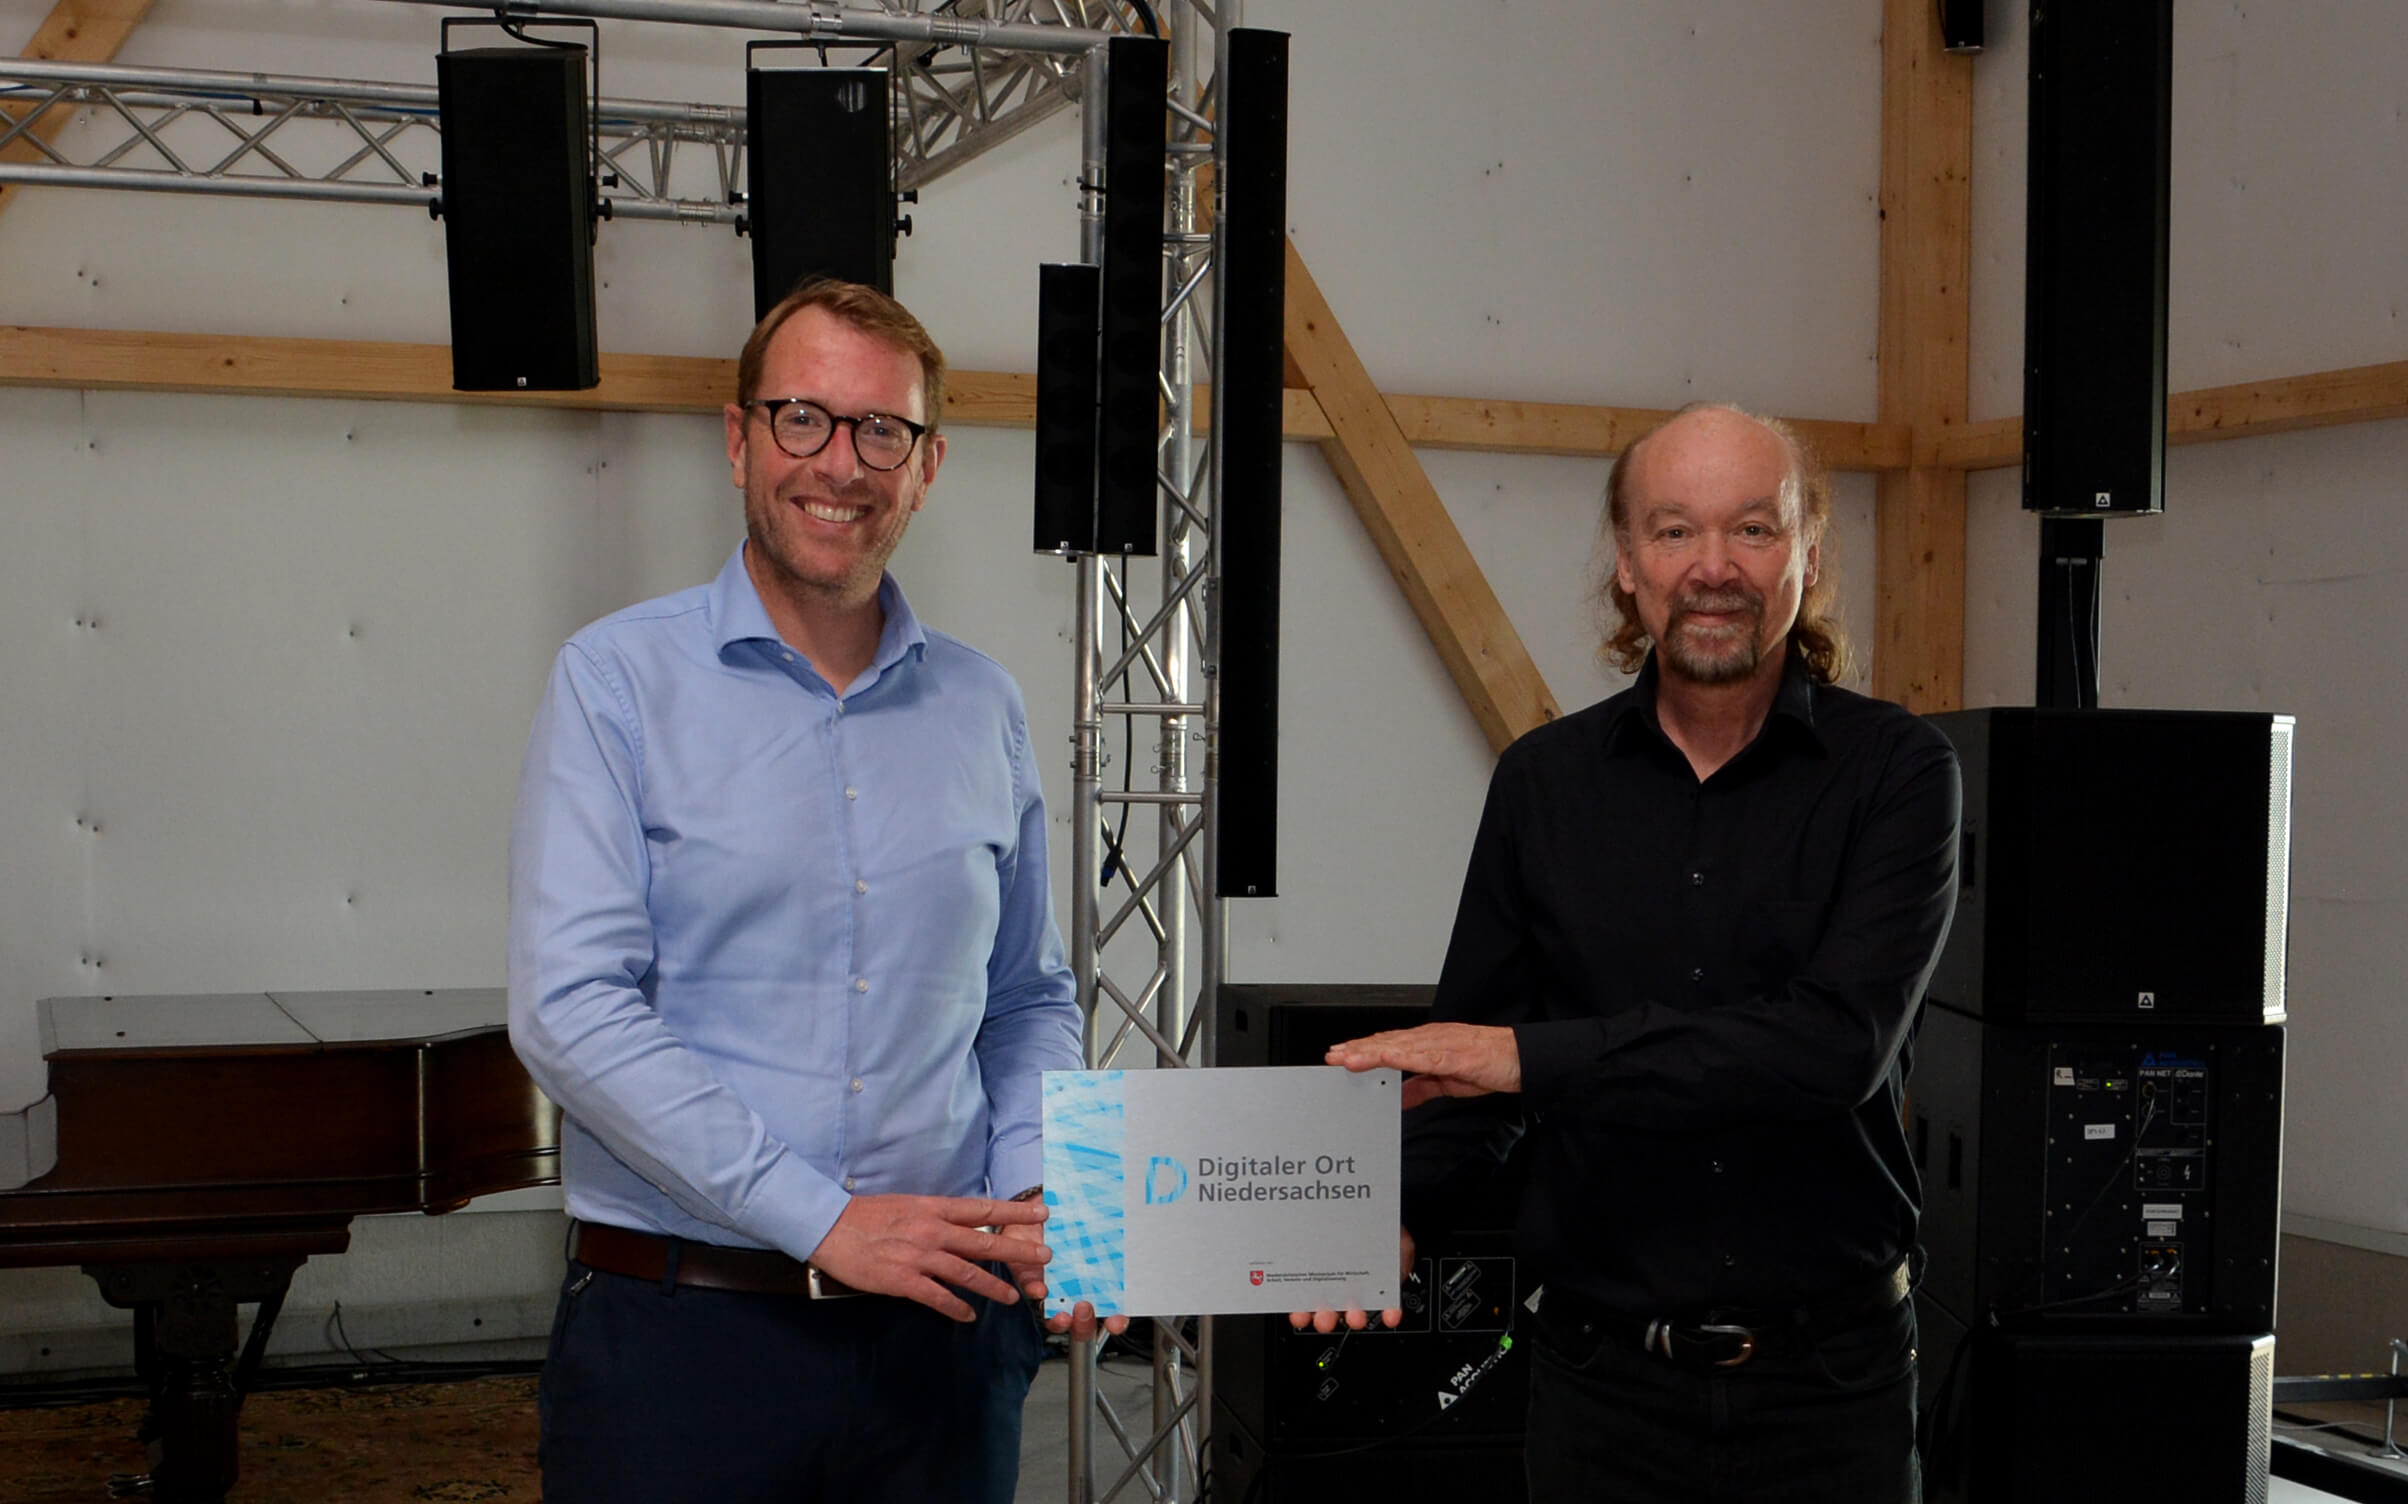 Staatssekretär Stefan Muhle überreicht Udo Borgmann die Pakette mit der Auszeichnung "Digitaler Ort Niedersachsen"